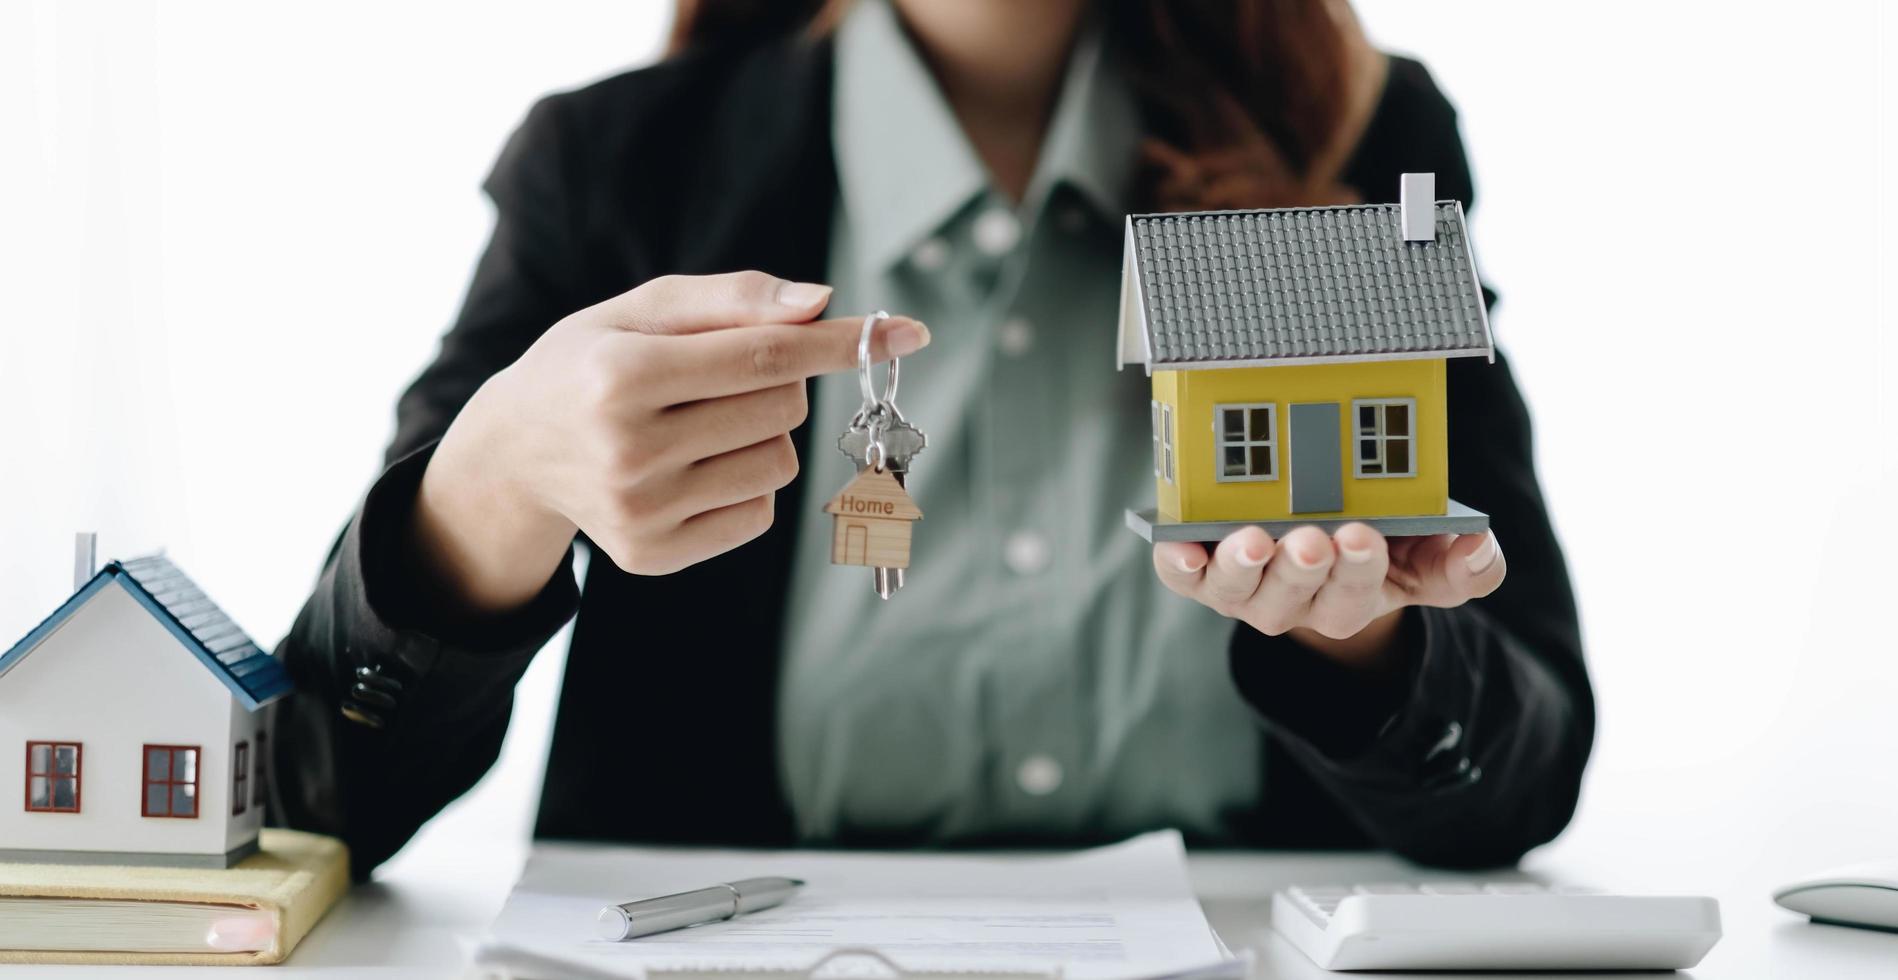 el agente inmobiliario presenta el préstamo hipotecario y envía las llaves al cliente después de firmar el contrato de seguro de la casa de alquiler con el formulario de propiedad aprobado. foto